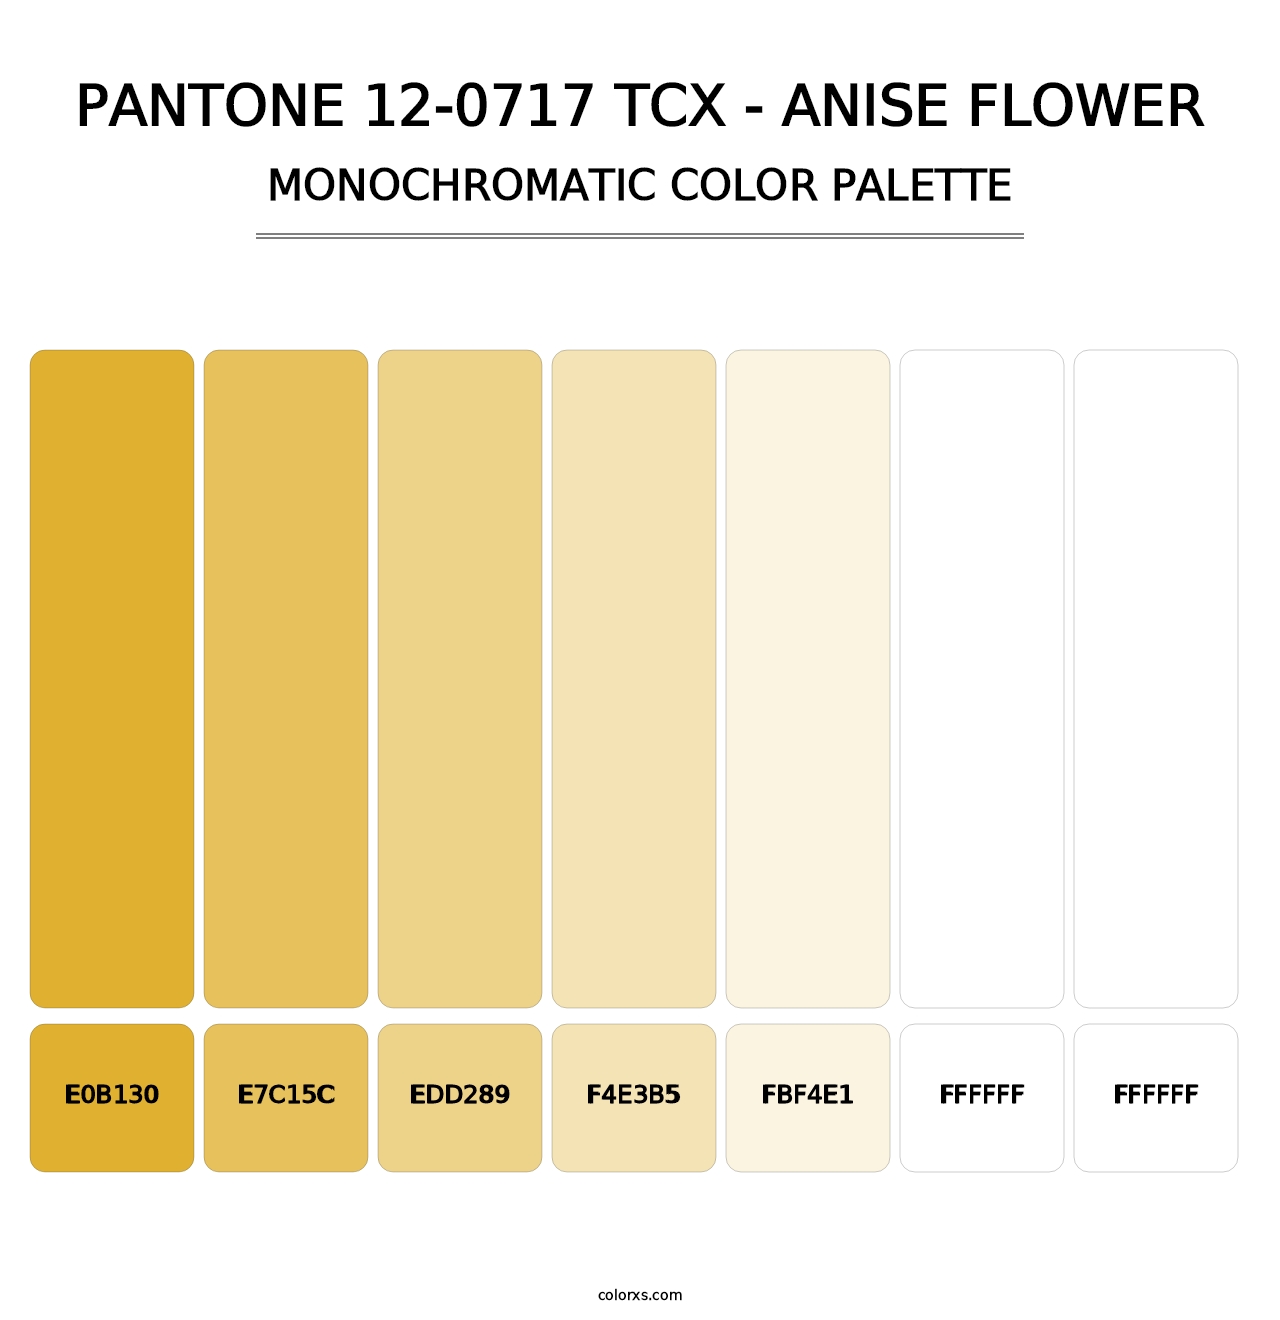 PANTONE 12-0717 TCX - Anise Flower - Monochromatic Color Palette